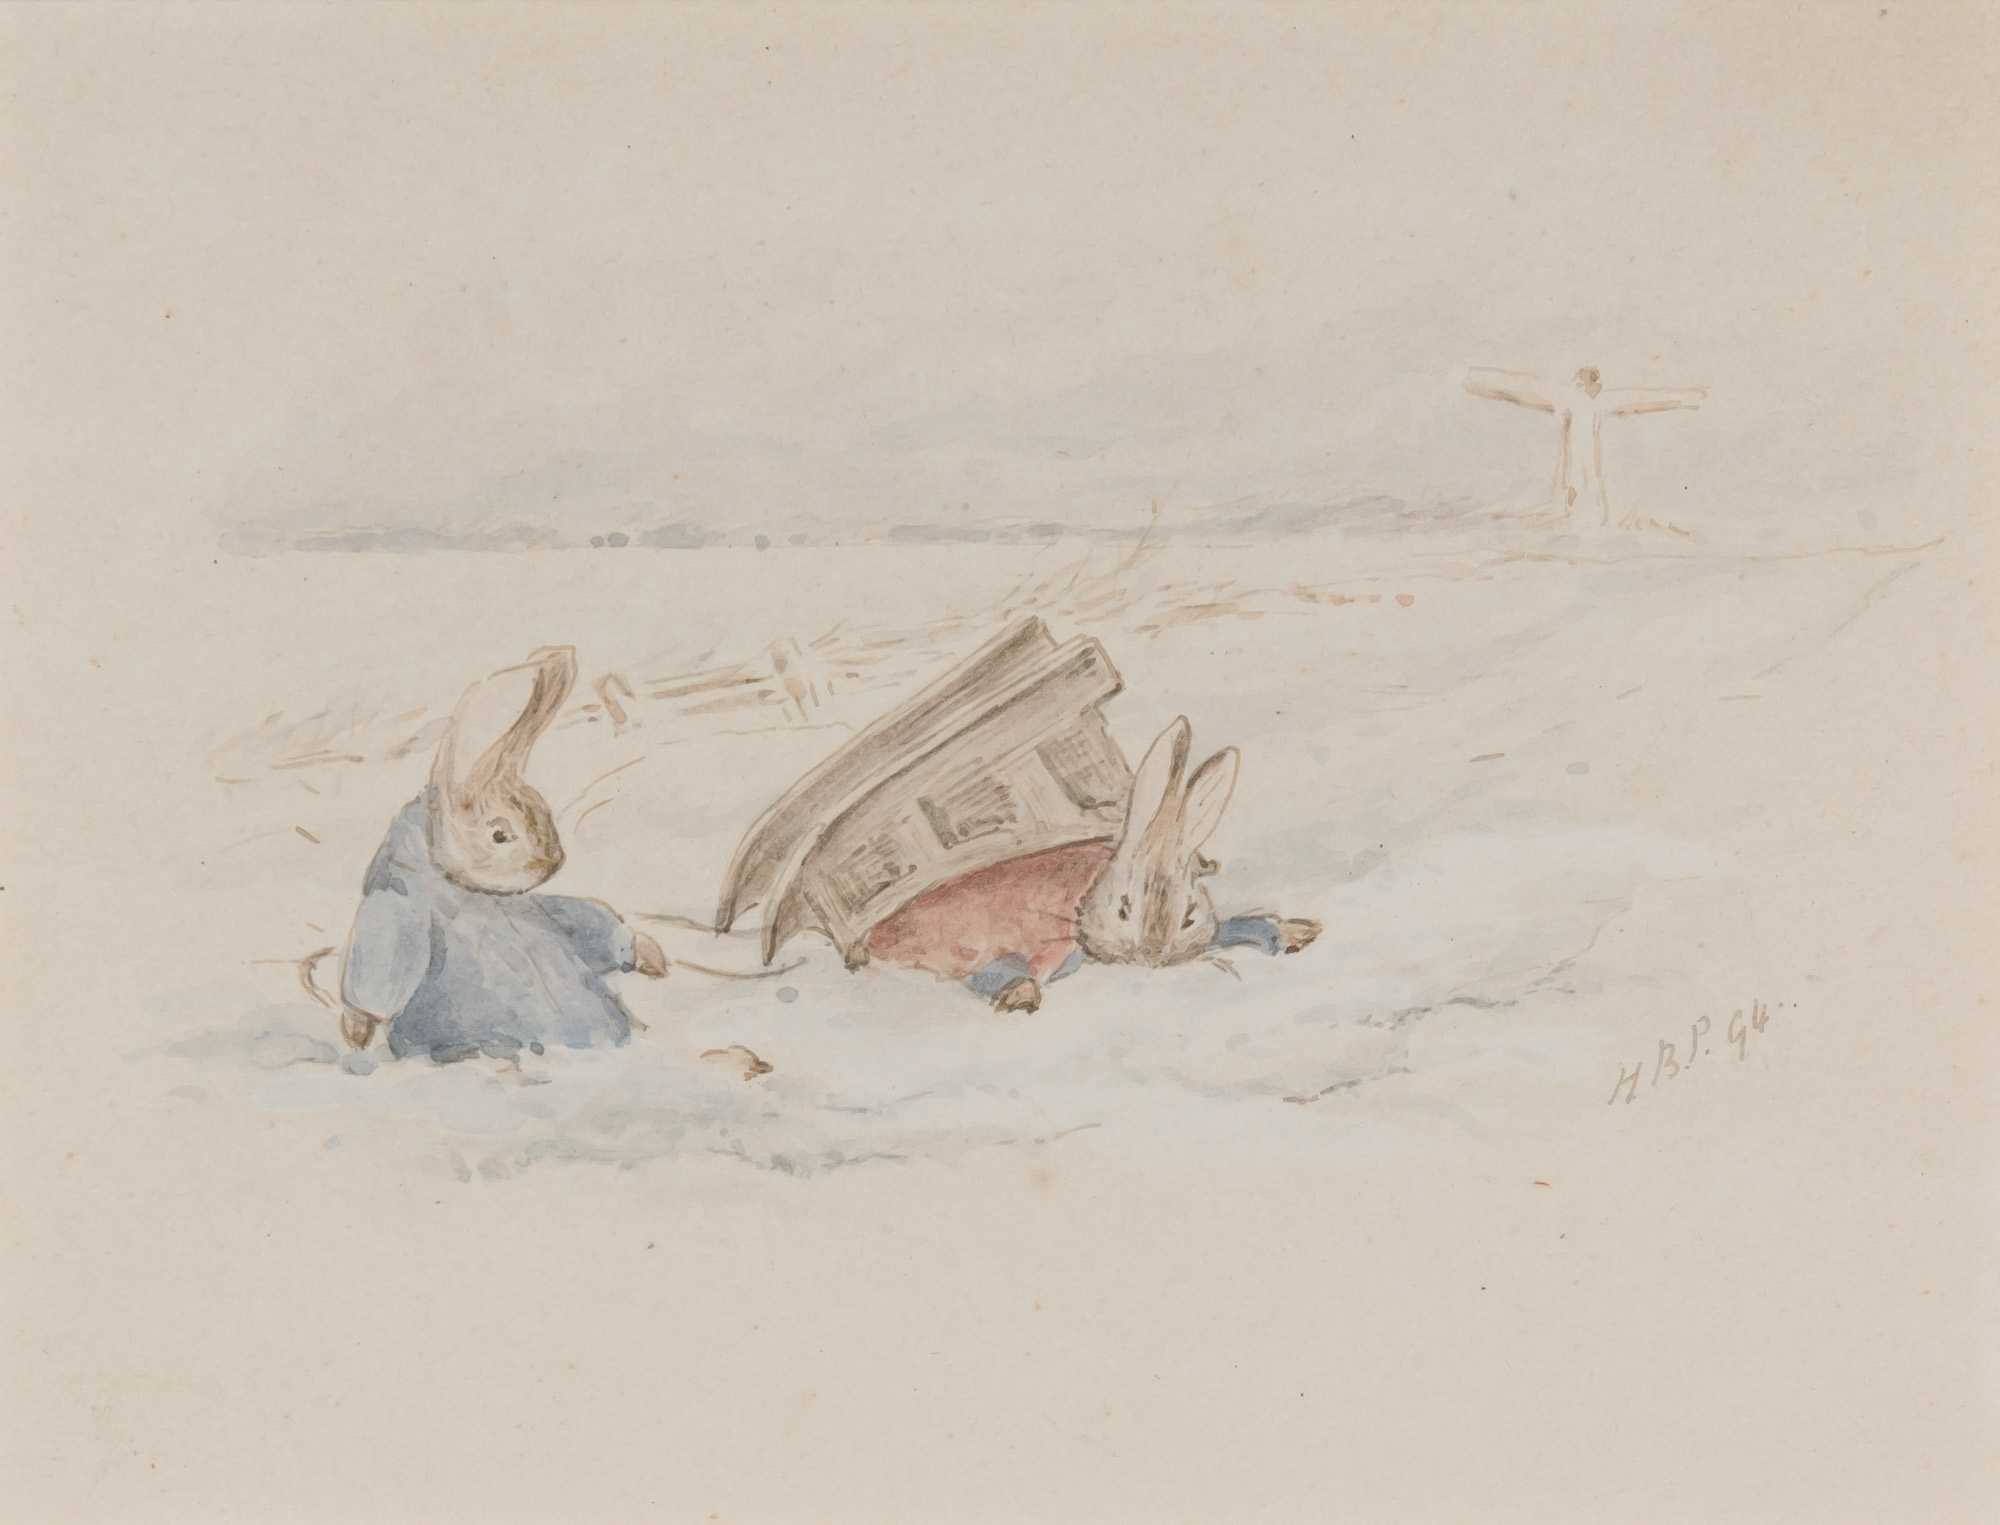 彼得兔雪橇 by 比阿特丽克斯 波特 - 1907 - 9 x 11 cm 